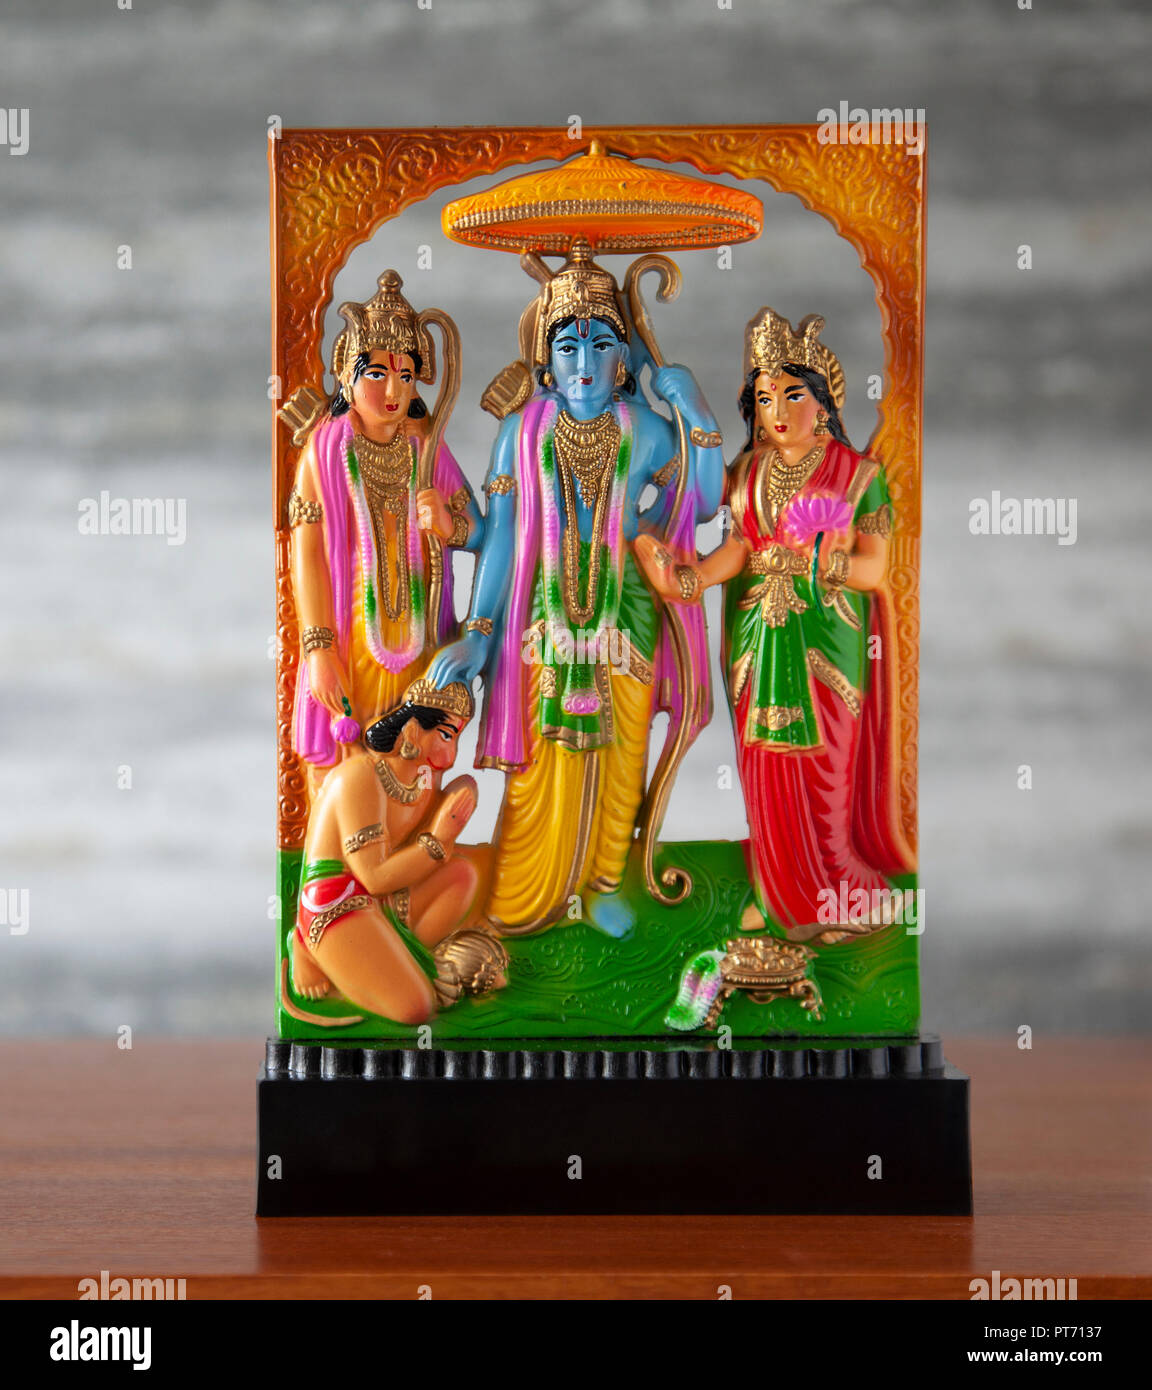 Piccolo in plastica stampata, standalone di Ram Darbar scultura, un religioso indù artefatto con Sri Ram, Sita, Lakshman e Hanuman la scimmia dio. Ramayana, Foto Stock